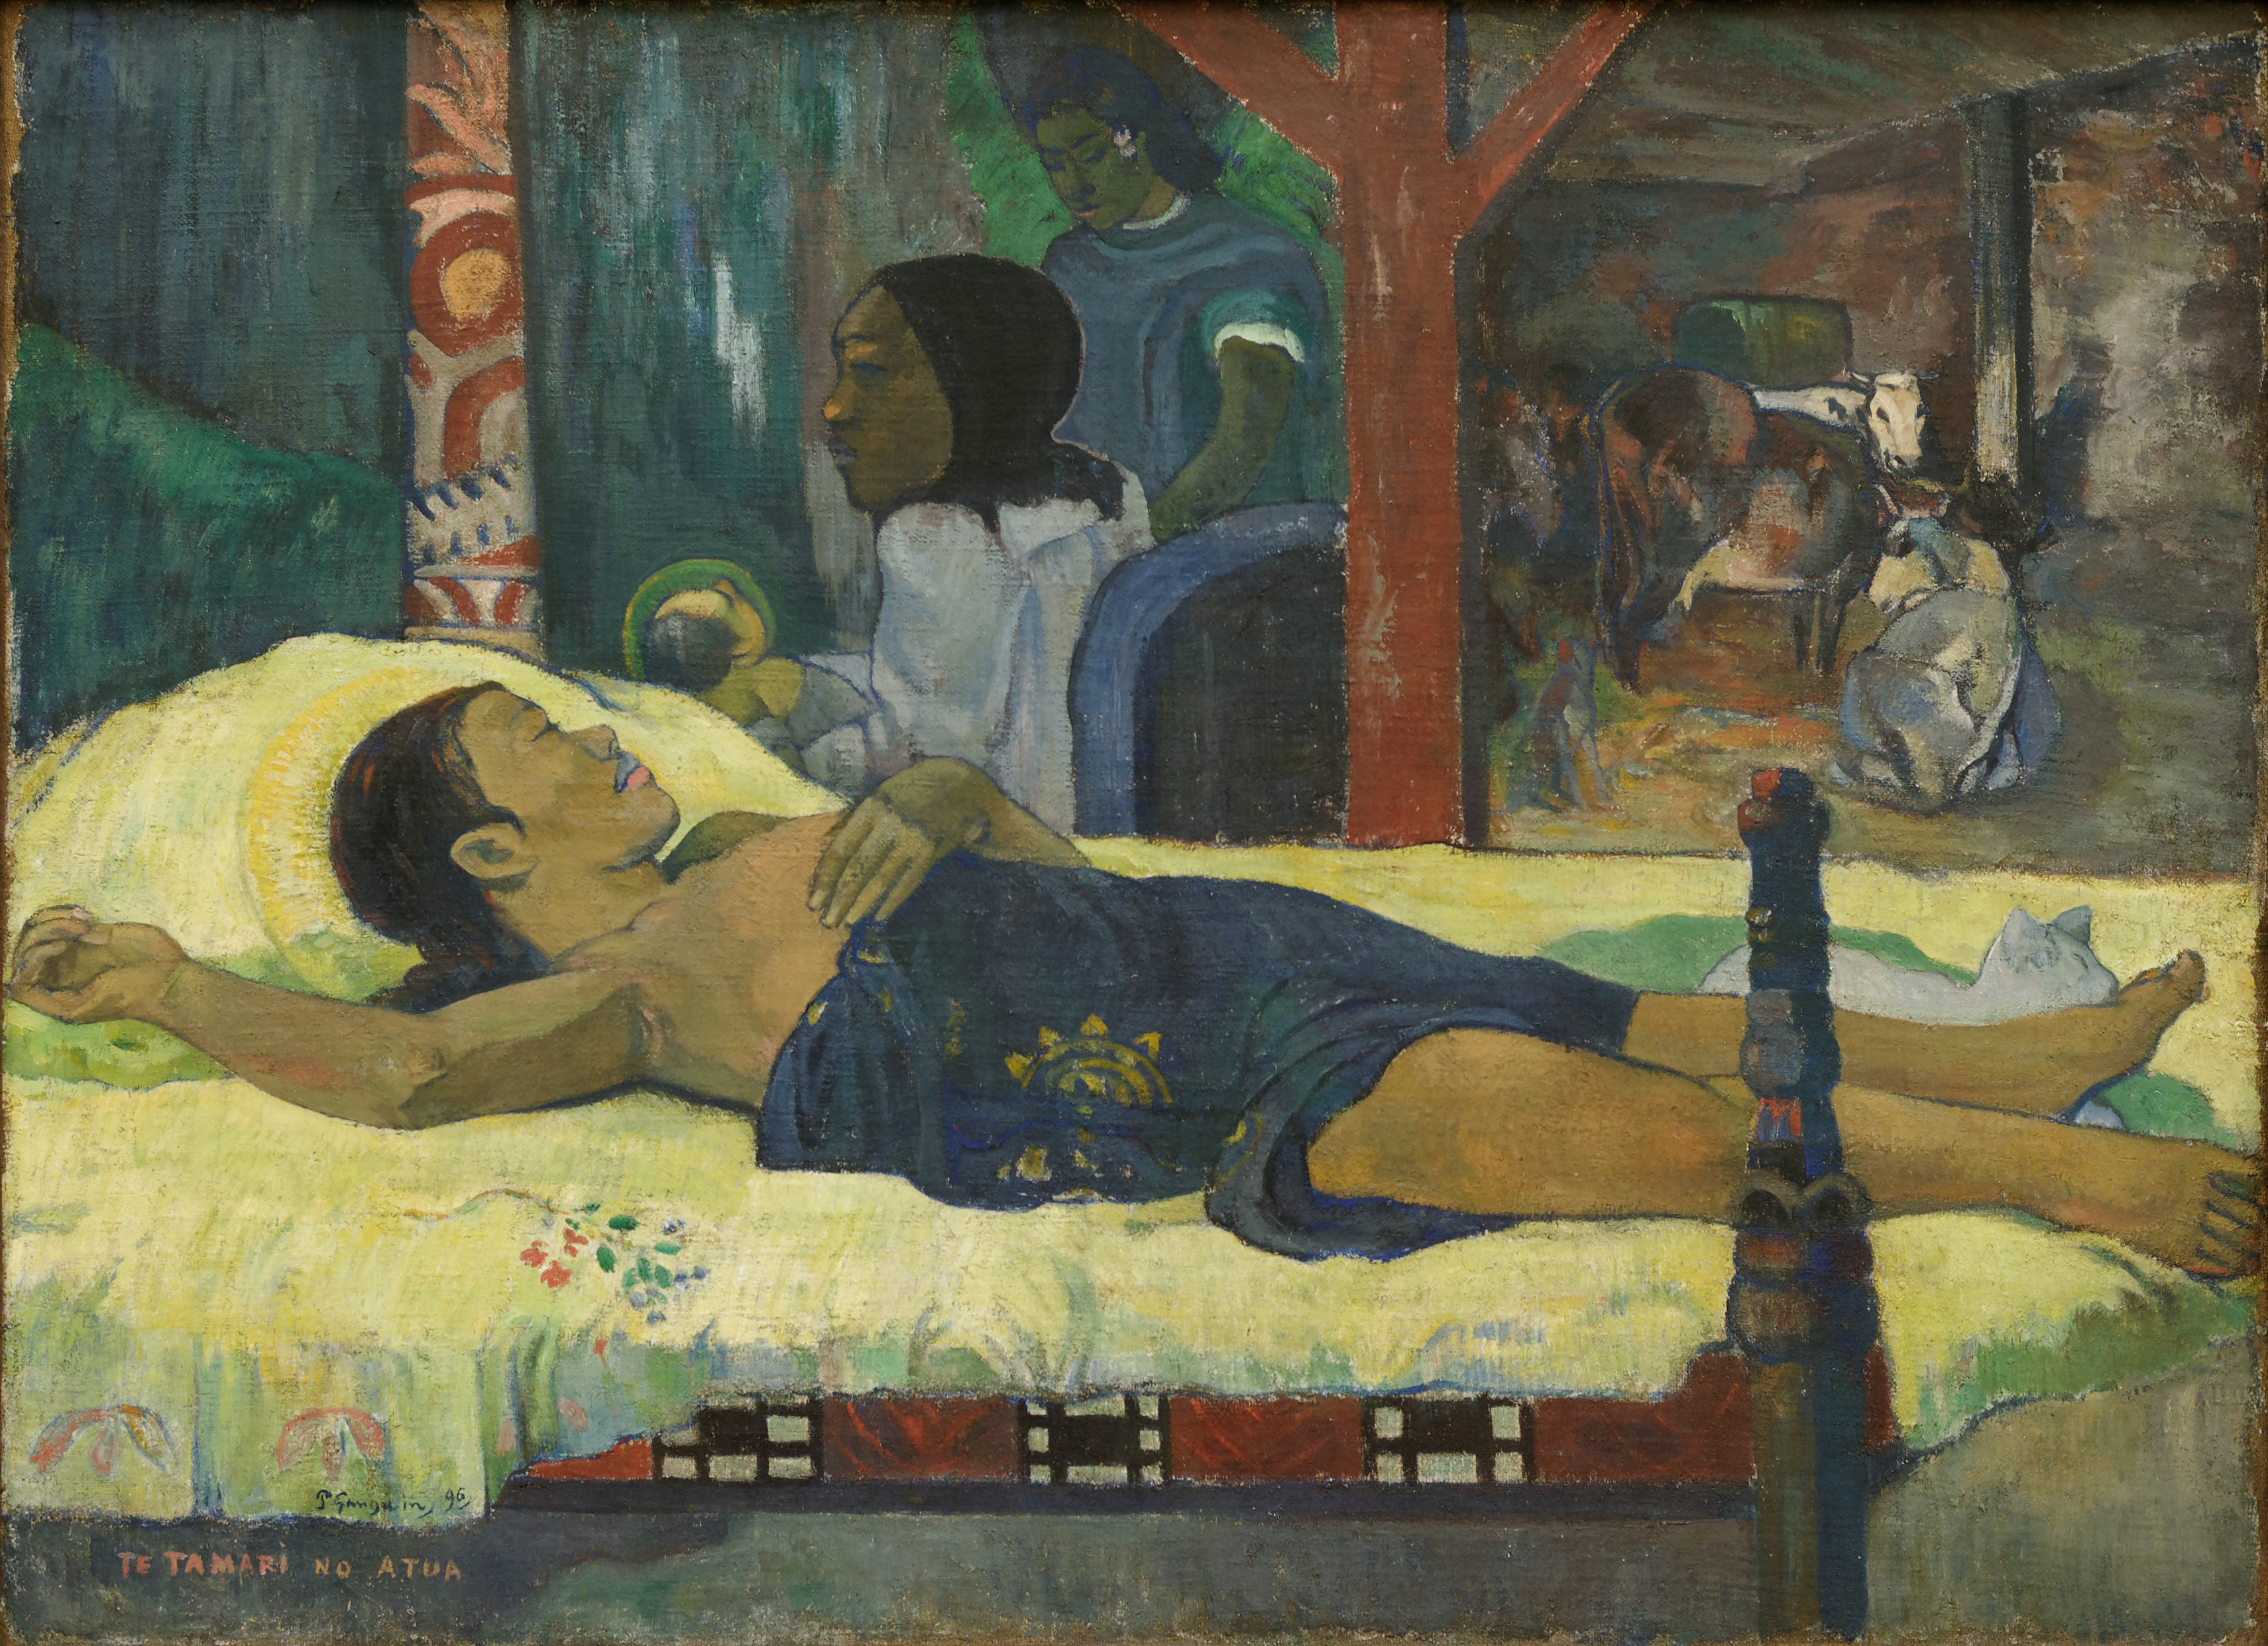 Te Tamari No Atua by Paul Gauguin - 1896 - 94 x 129 cm 